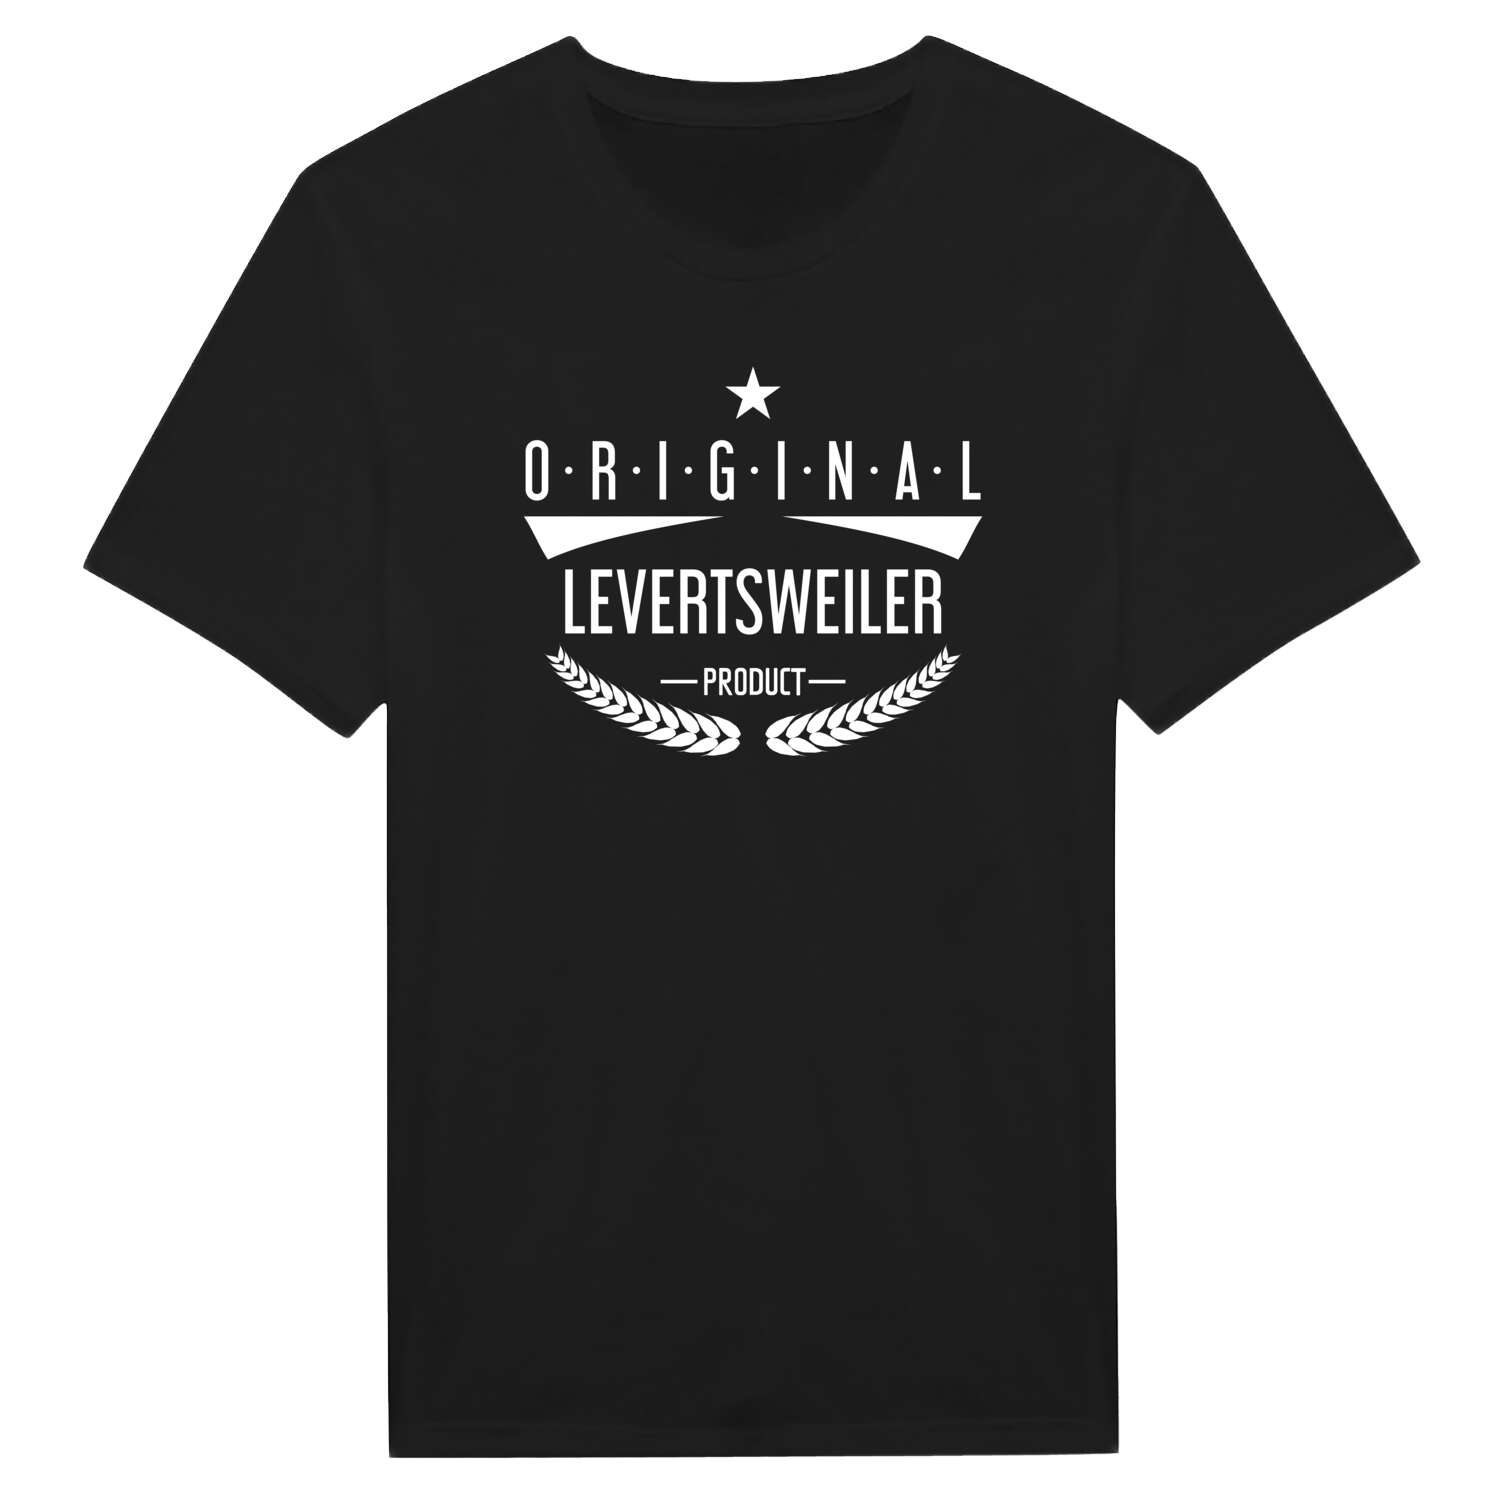 Levertsweiler T-Shirt »Original Product«